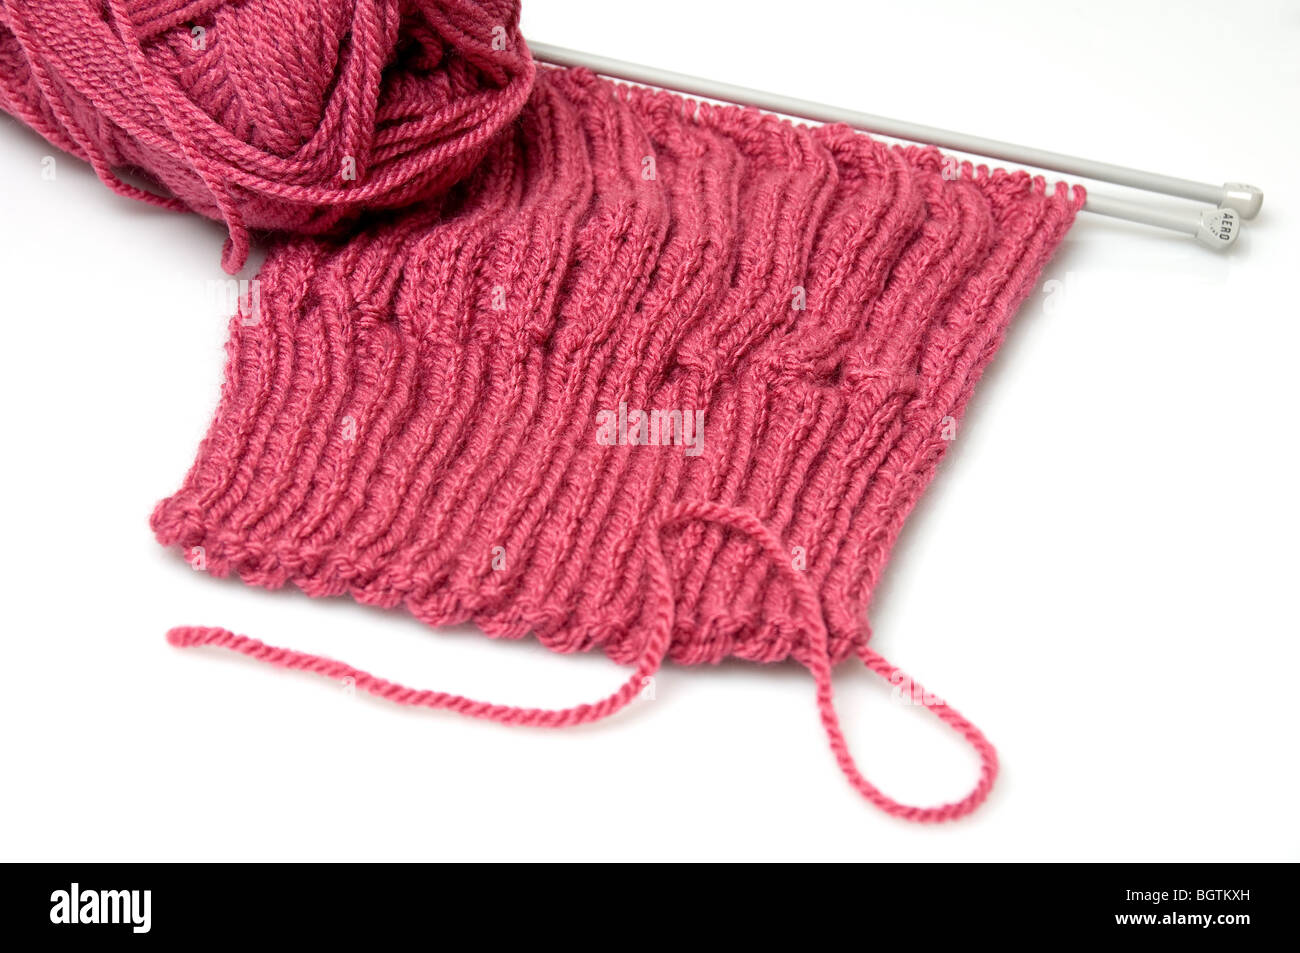 Gros plan de tricotage avec des aiguilles et une boule de laine rose sur fond blanc Banque D'Images